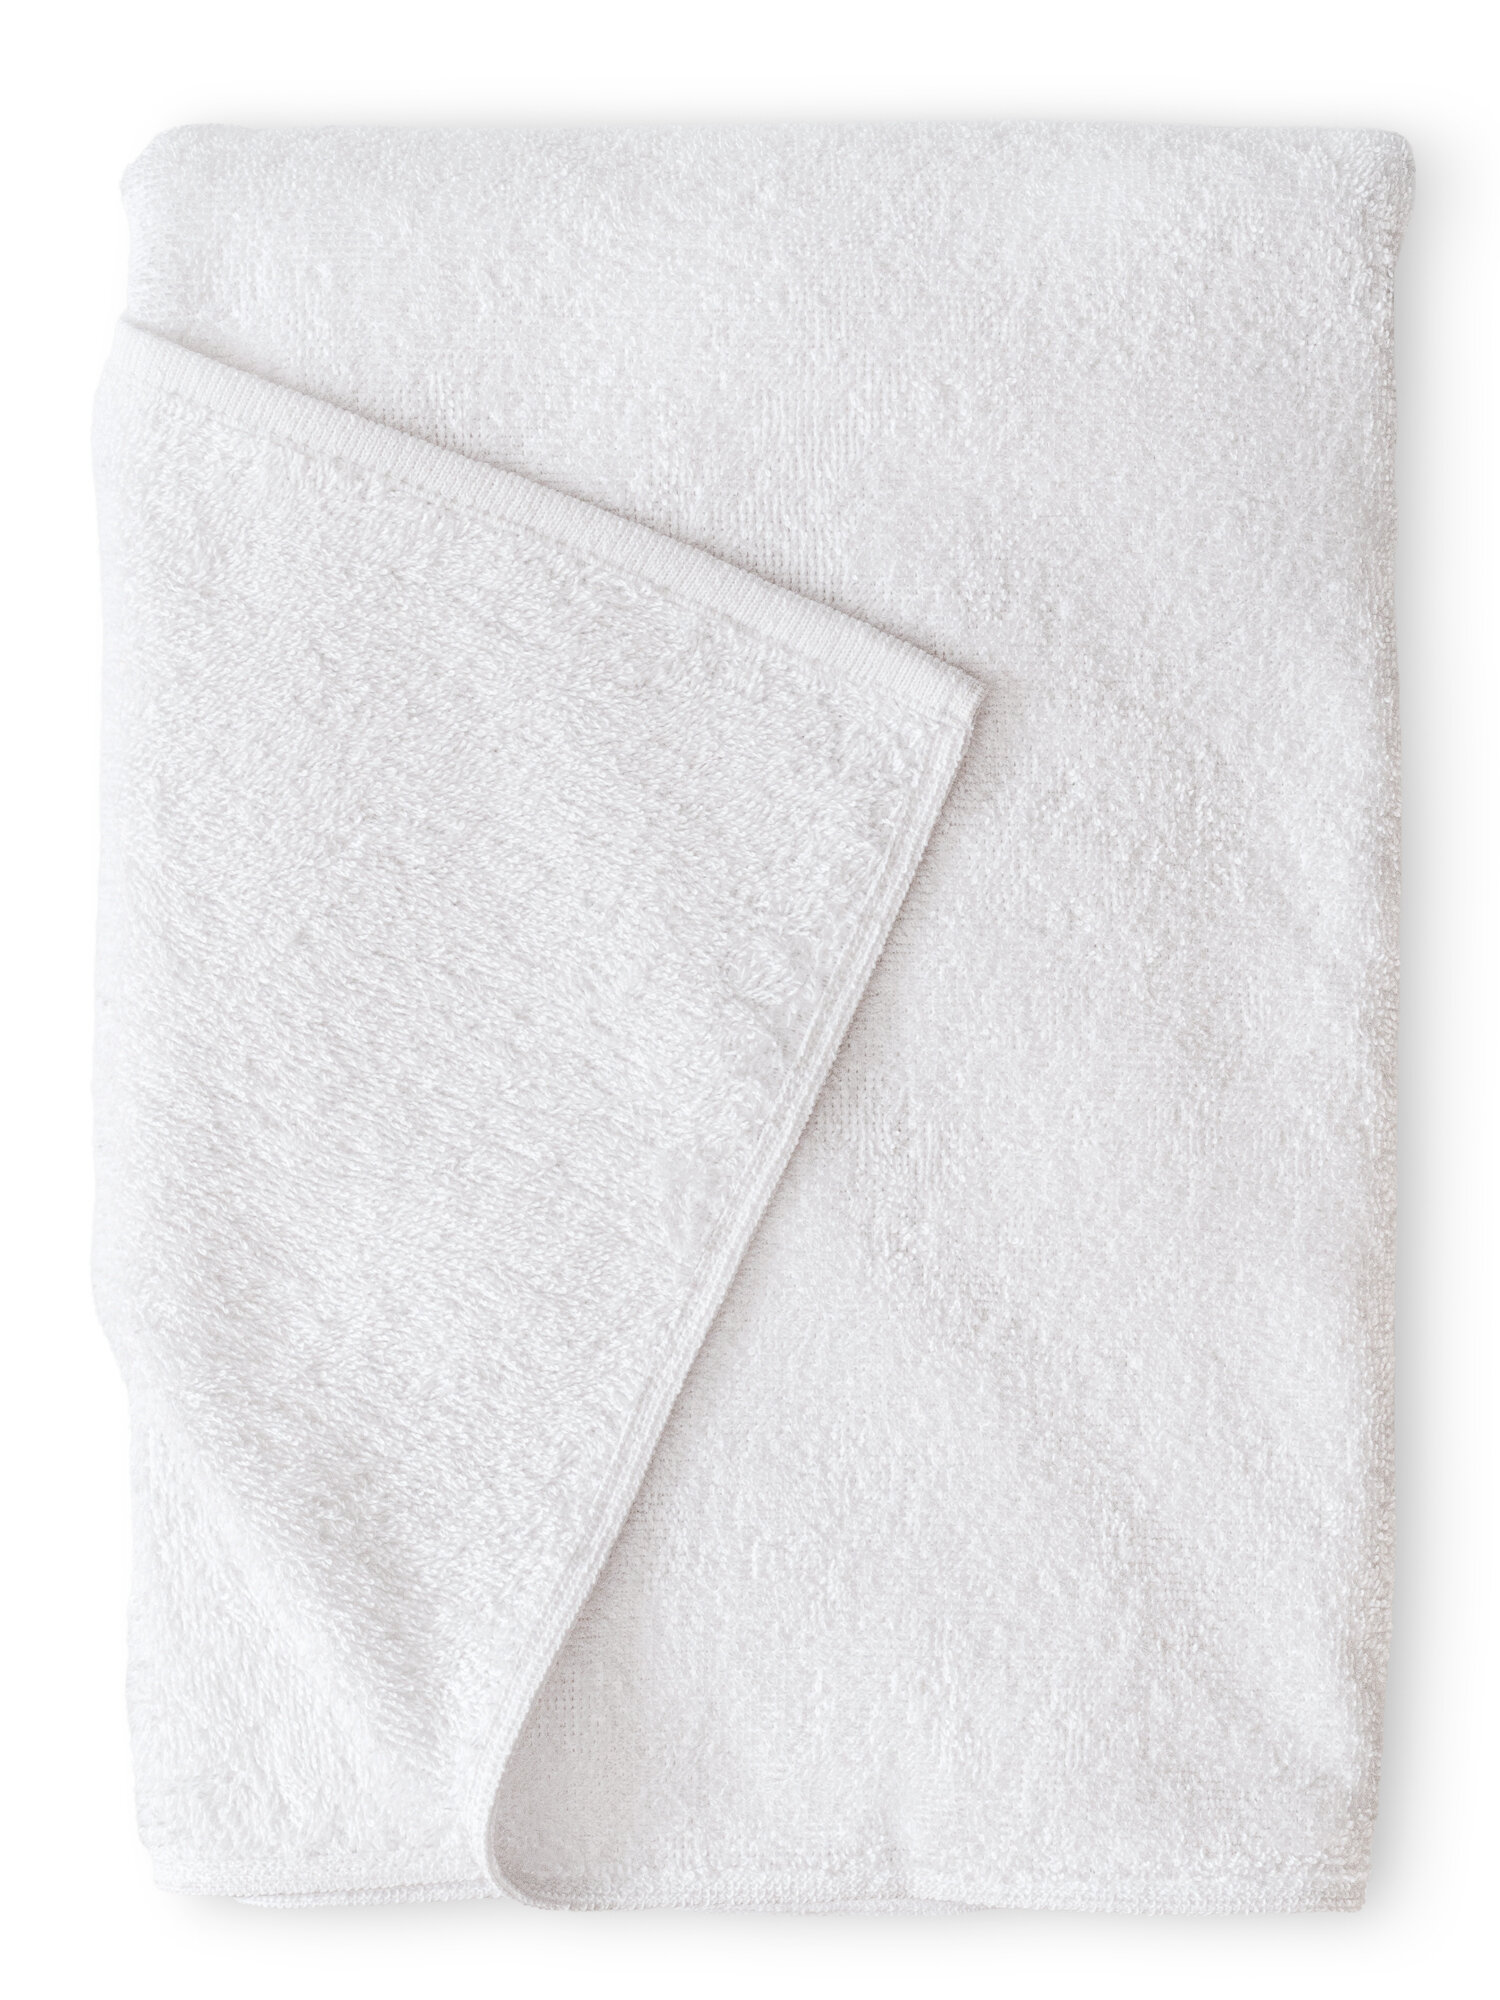 Махровое полотенце 70х140 банное белого цвета terryOne 1 шт. 450 г/м2